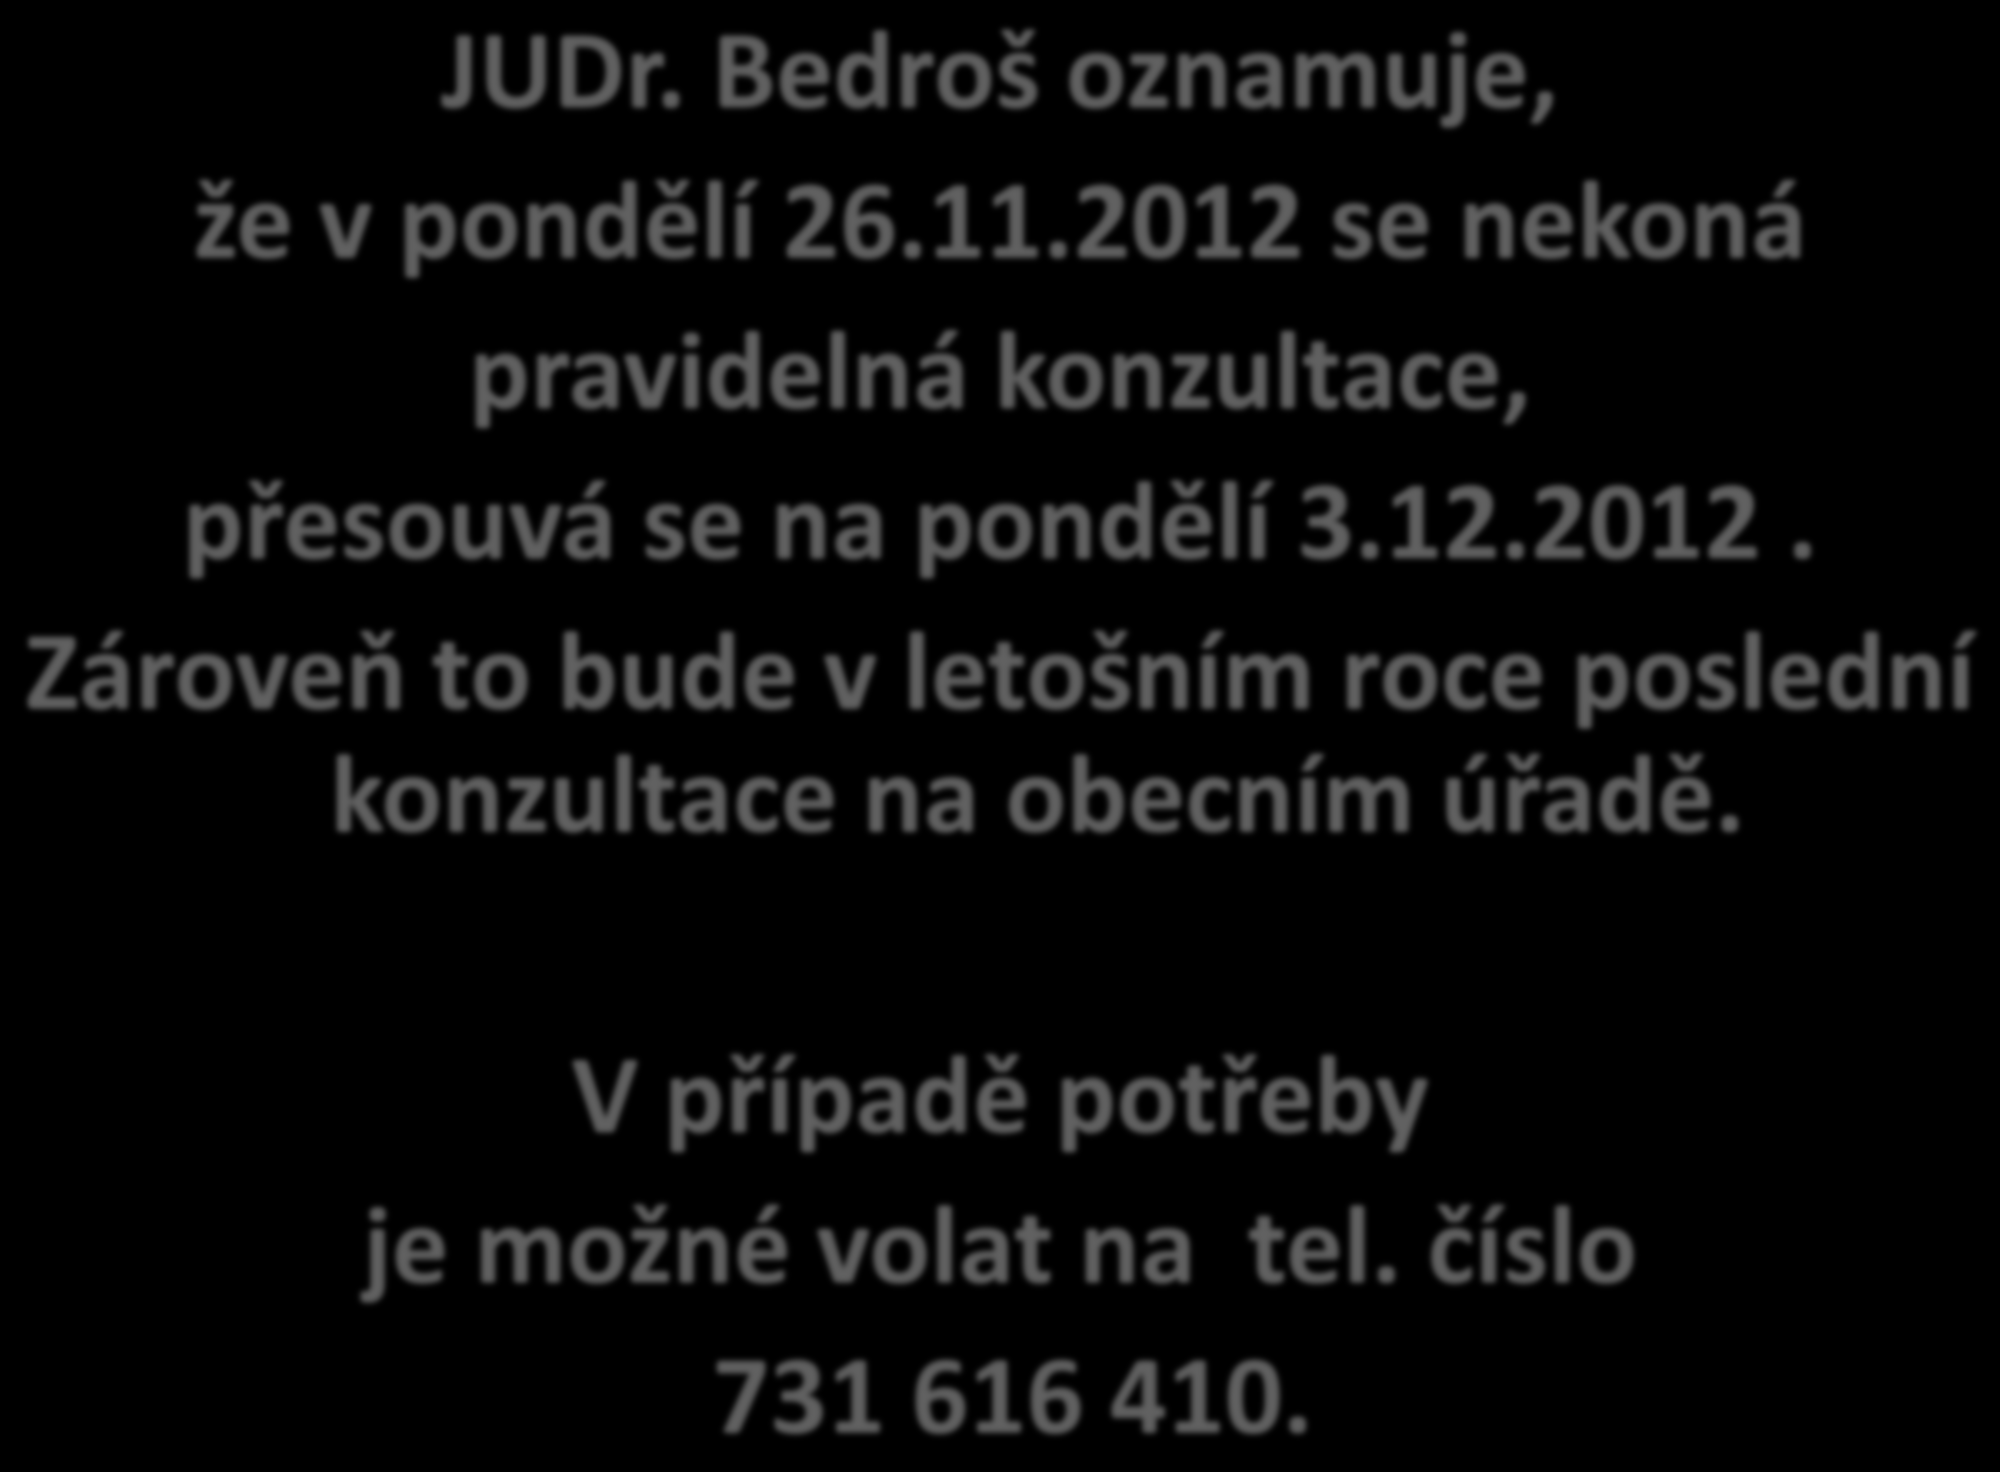 JUDr. Bedroš oznamuje, že v pondělí 26.11.2012 se nekoná pravidelná konzultace, přesouvá se na pondělí 3.12.2012. Zároveň to bude v letošním roce poslední konzultace na obecním úřadě.